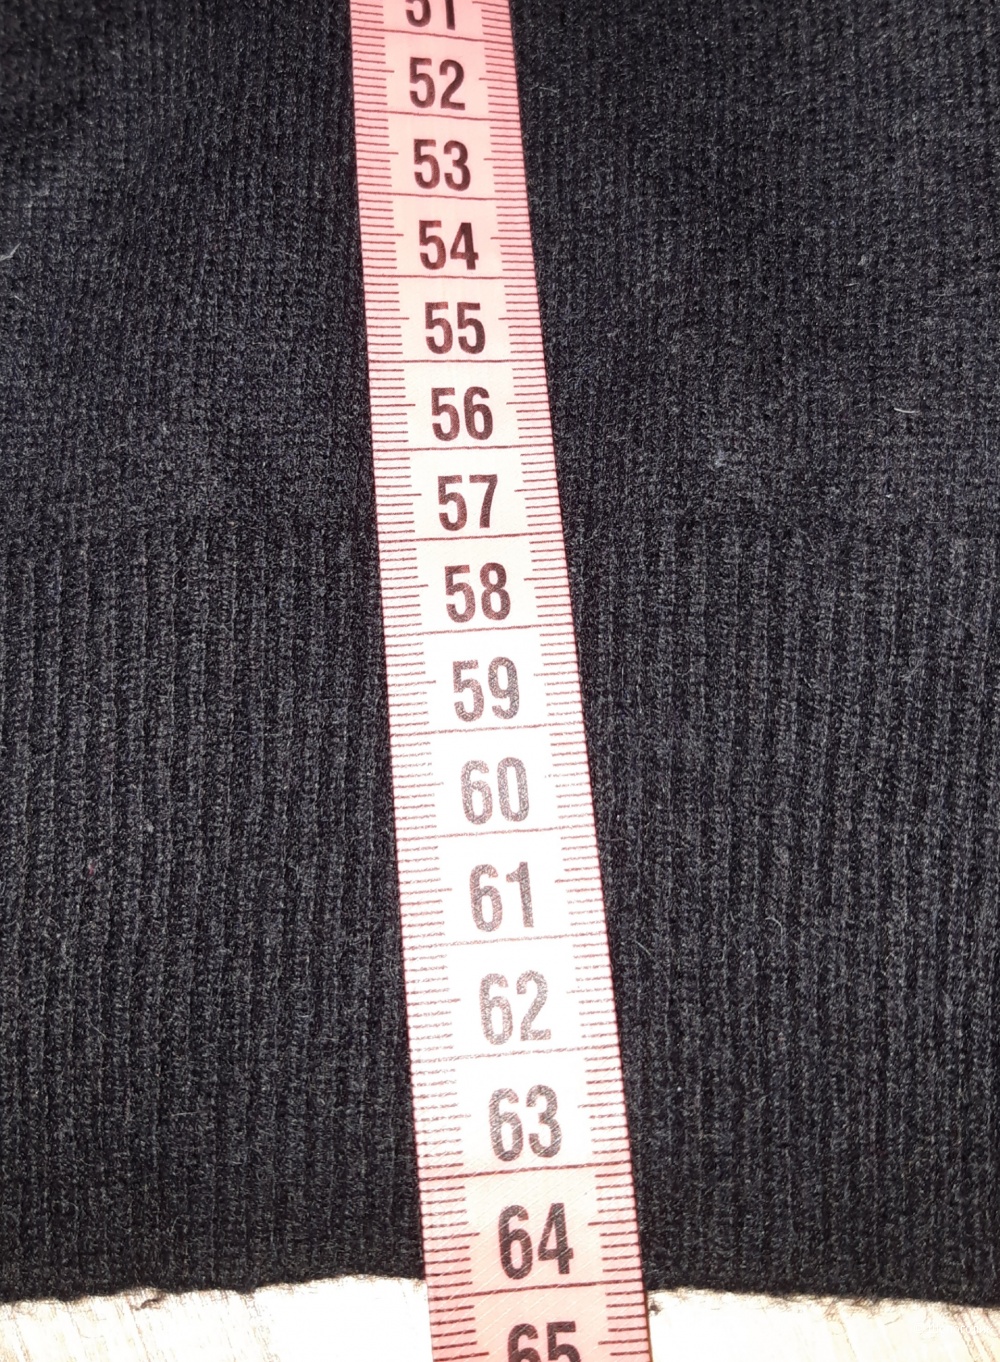 Кашемировый свитер george collection, размер 46/48